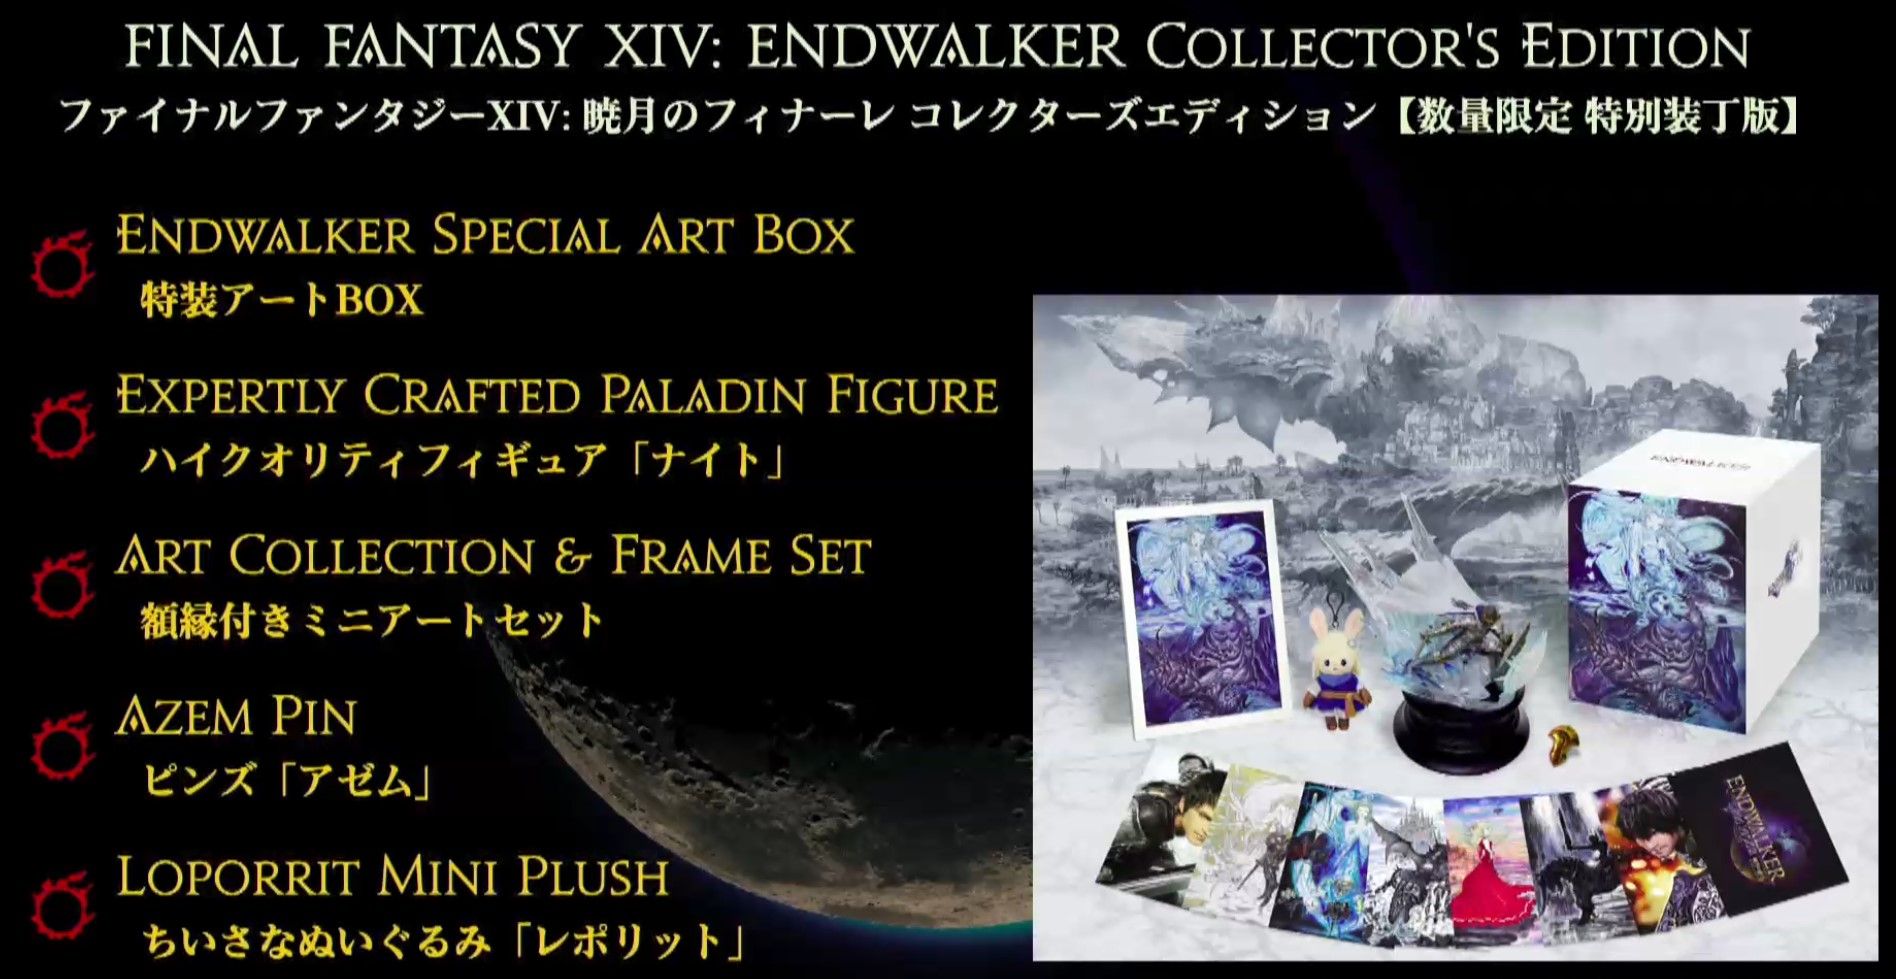 Final Fantasy 14's Endwalker Expansion physical and digital versions